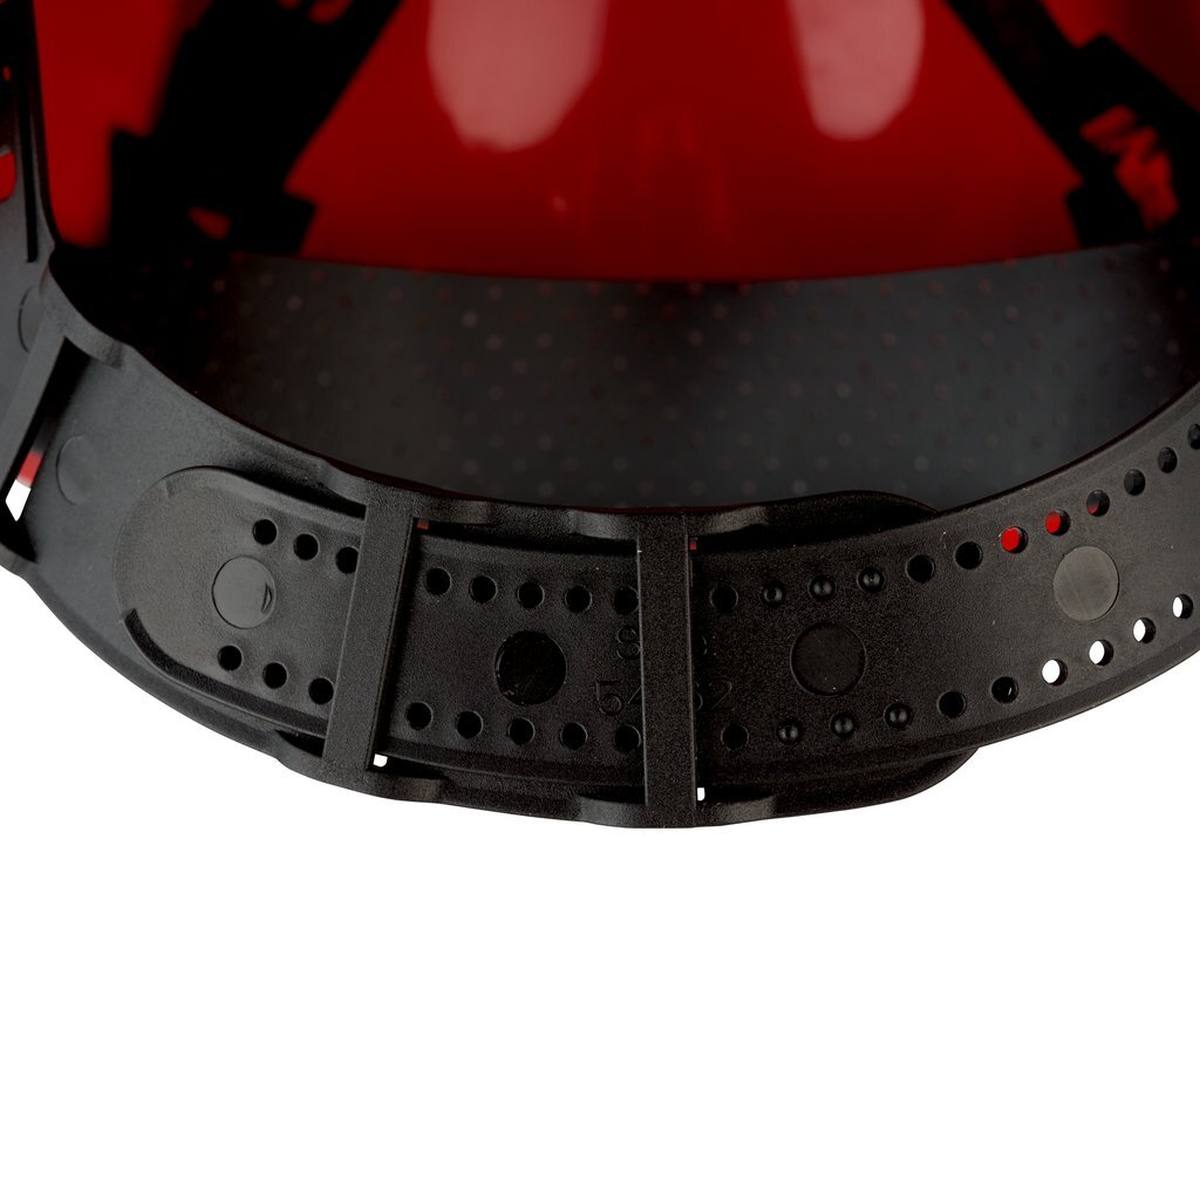 3M Casco de seguridad G3000 G30CUR en rojo, ventilado, con uvicator, pinlock y banda de sudor de plástico